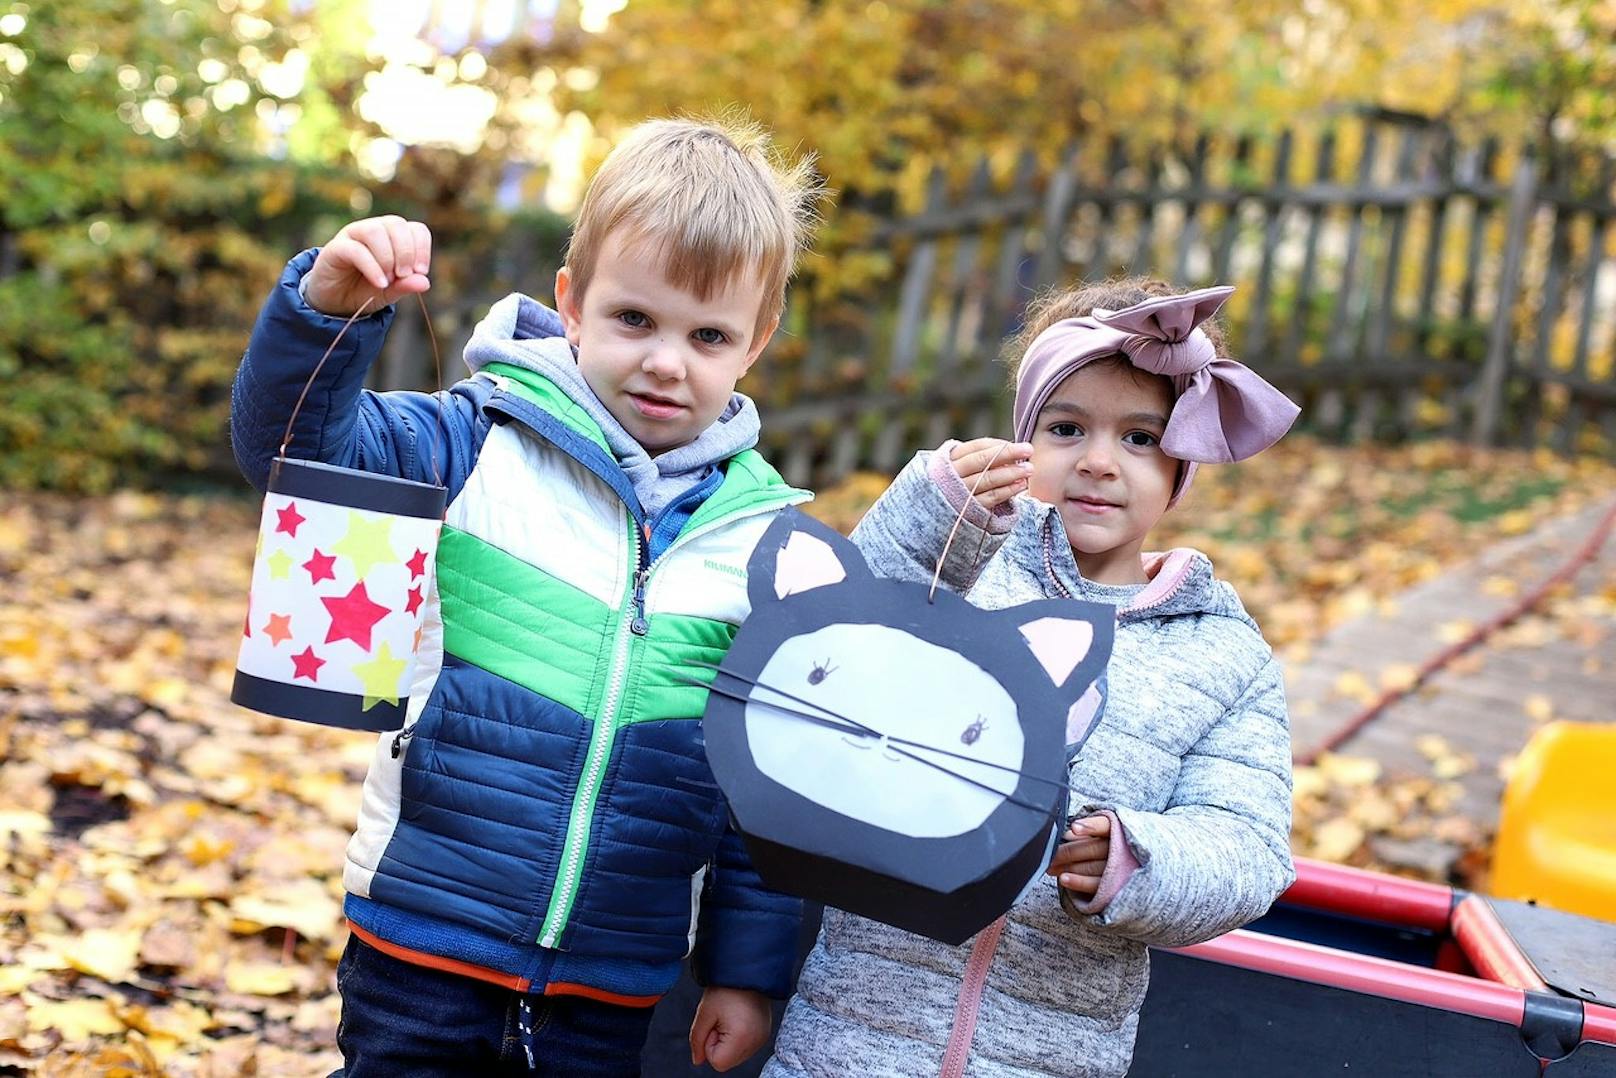 Um den Kindern Normalität und Kontinuität zu bieten, wird auch heuer in den Wiener Kindergärten das Laternenfest gefeiert. Dafür wurde in den vergangenen Wochen fleißig gebastelt.